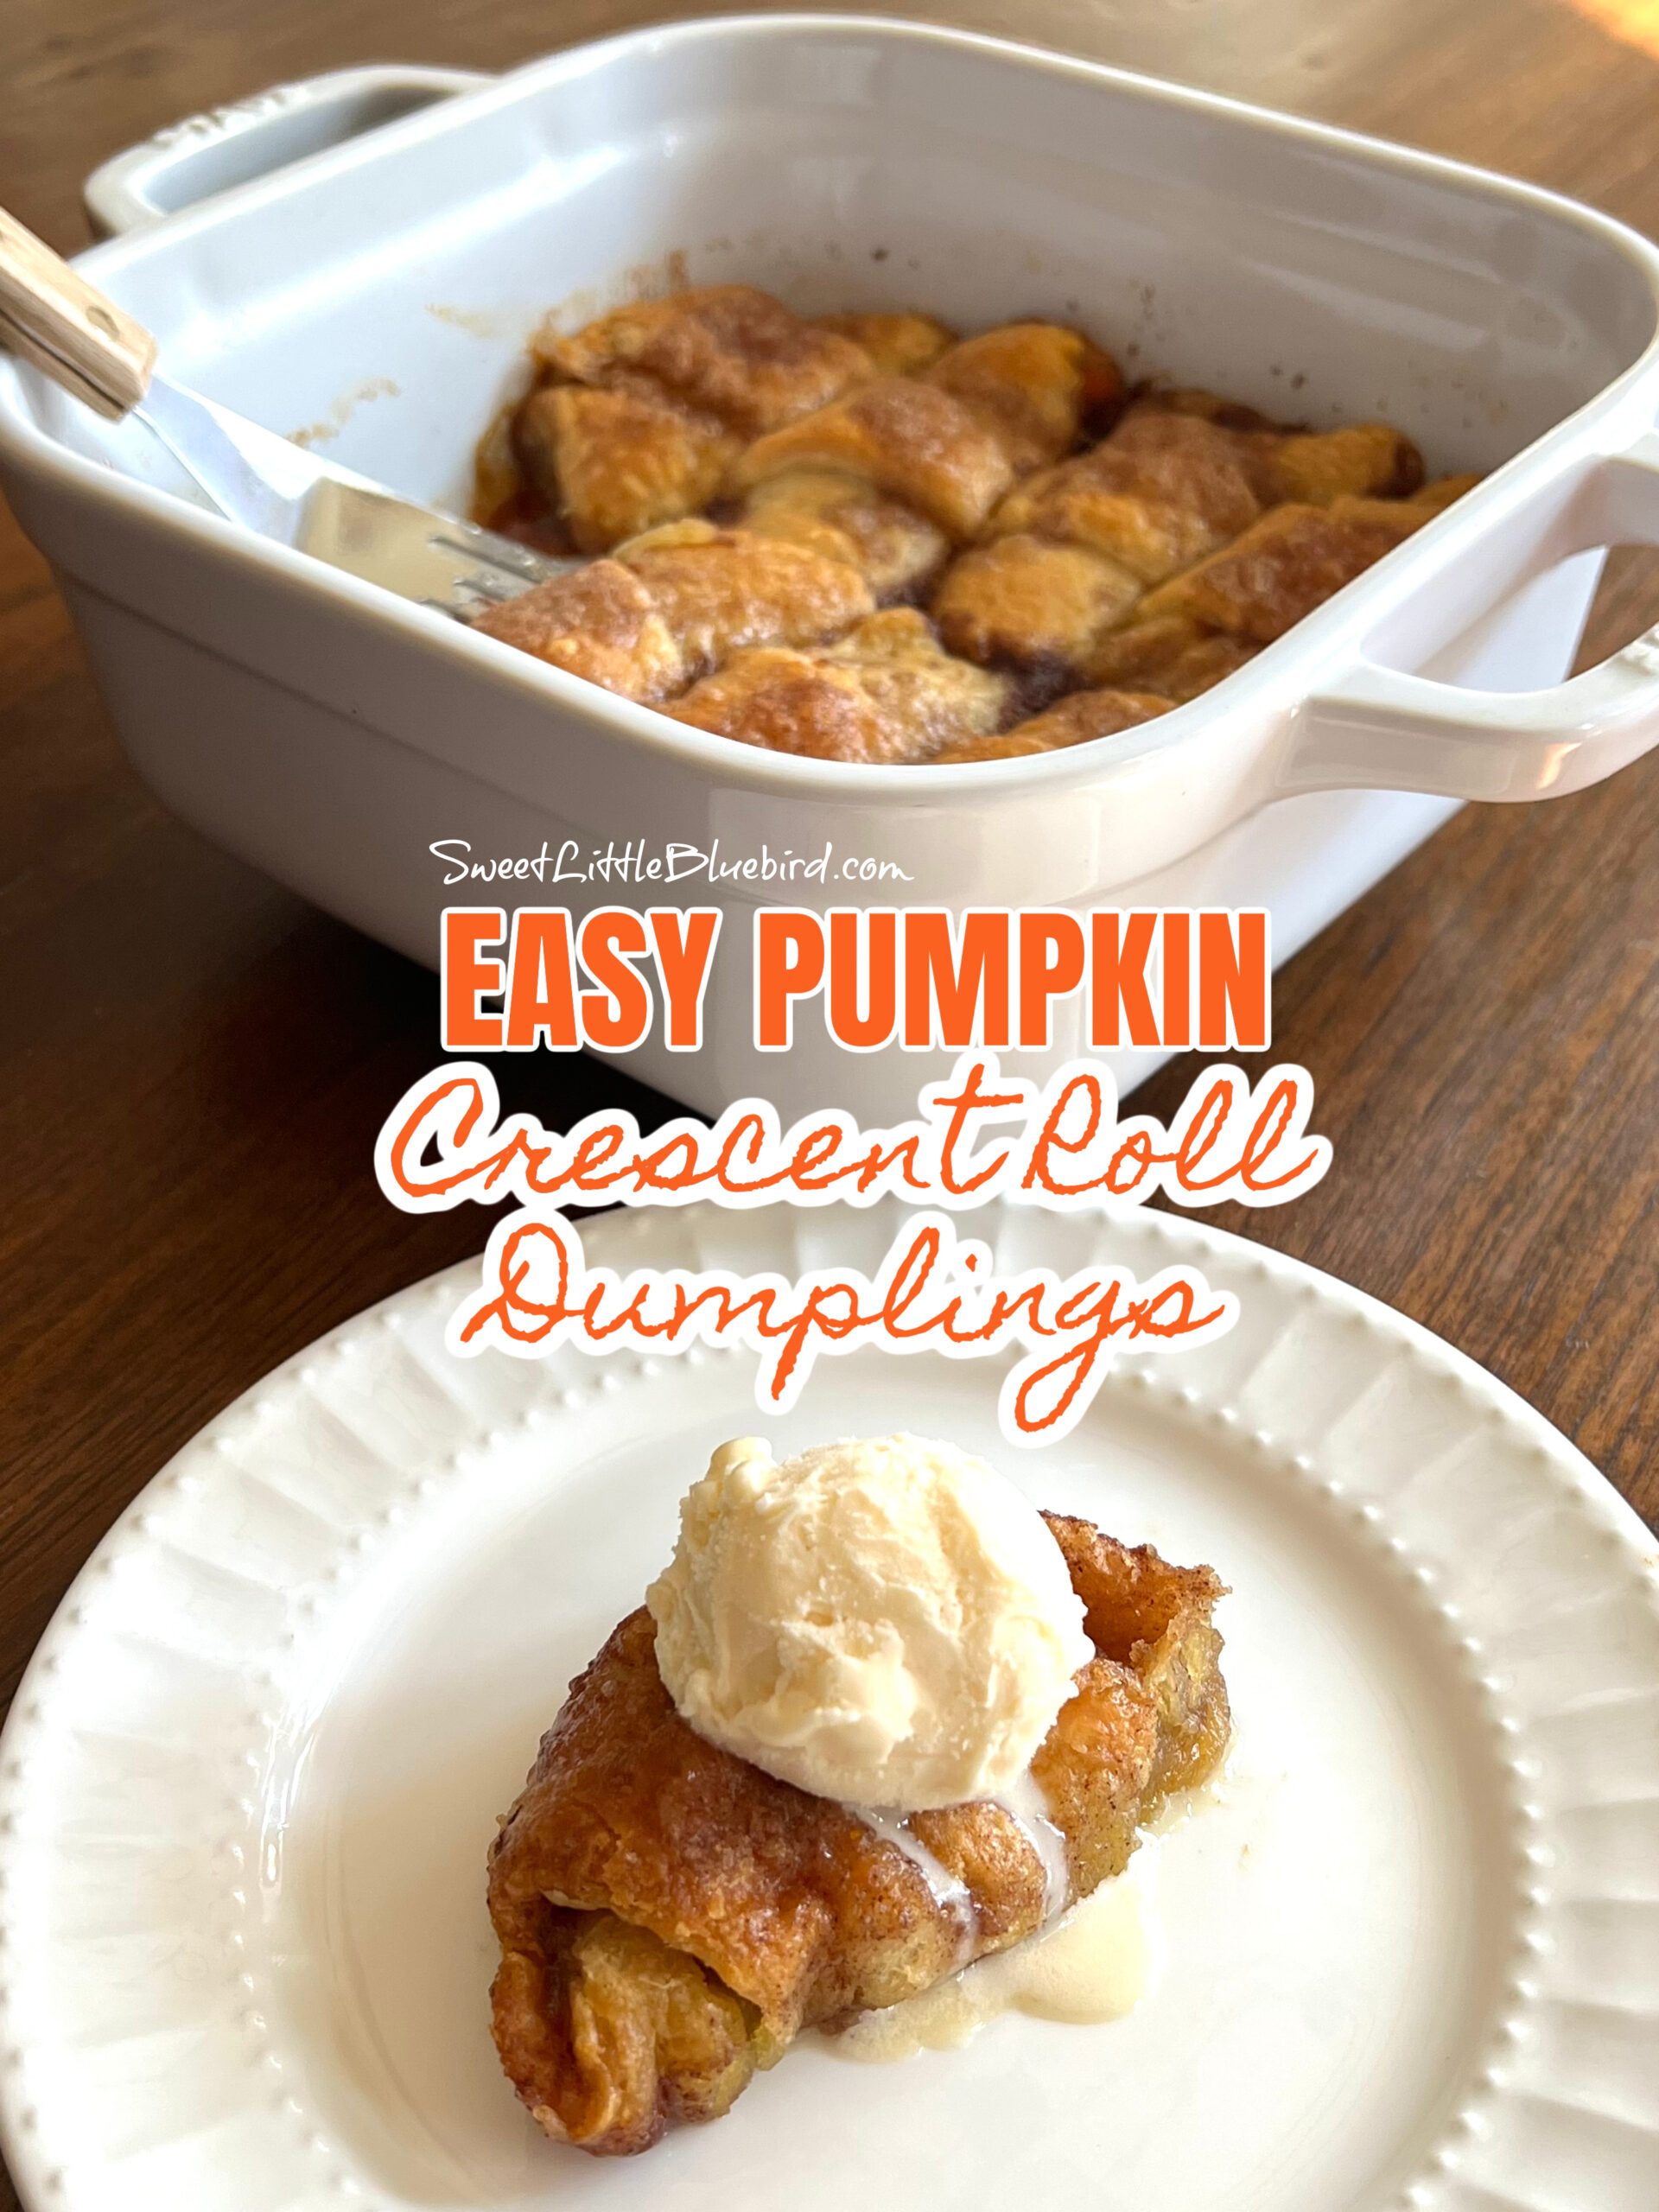 Pumpkin Crescent Roll Dumplings